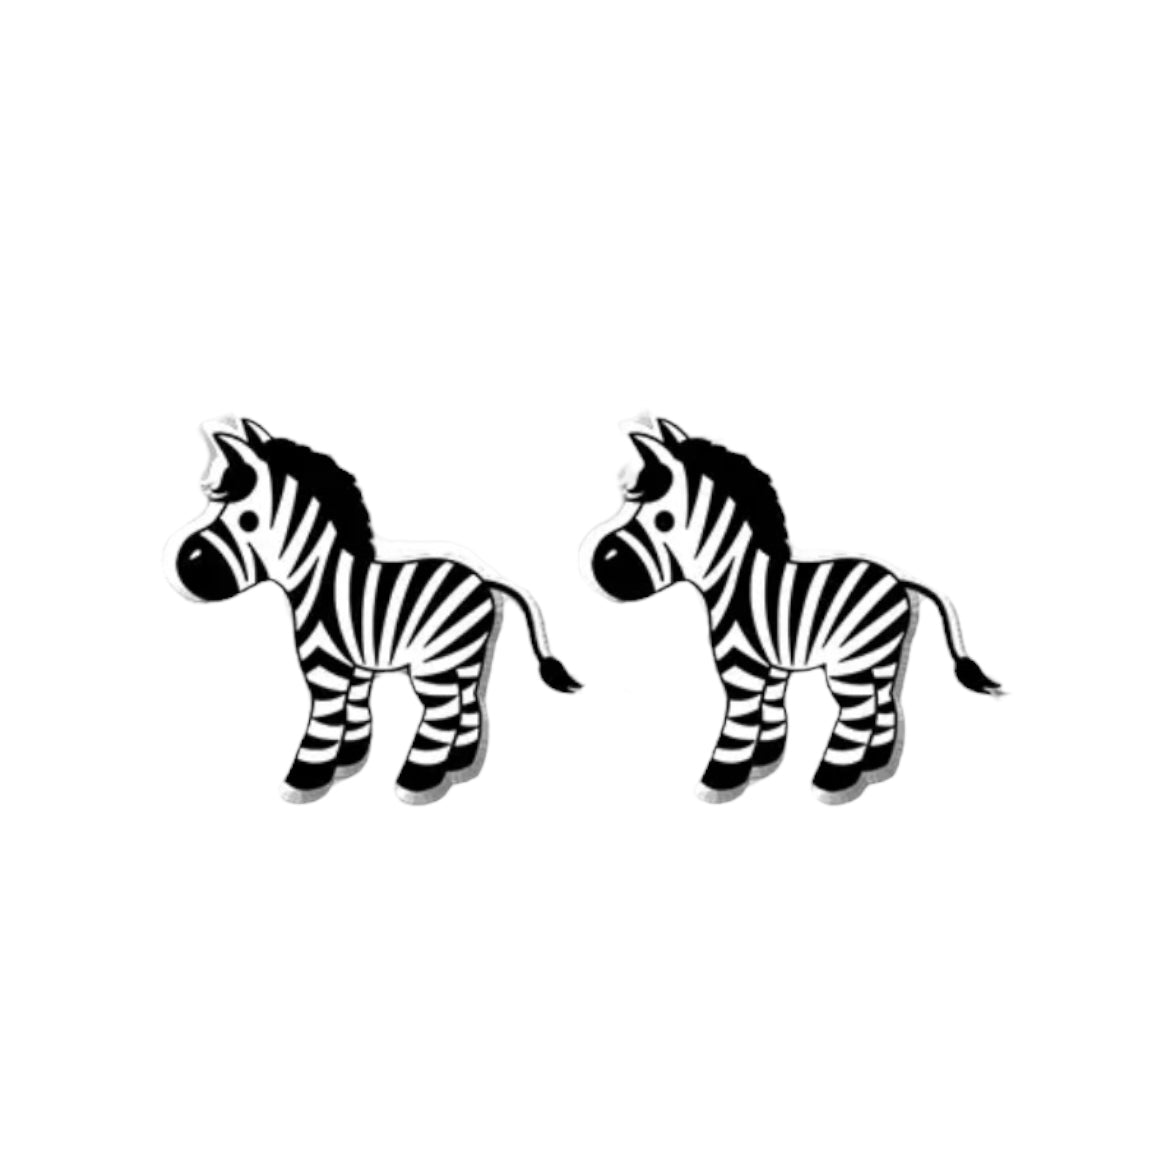 Zebra Stud Earrings - 3 Styles